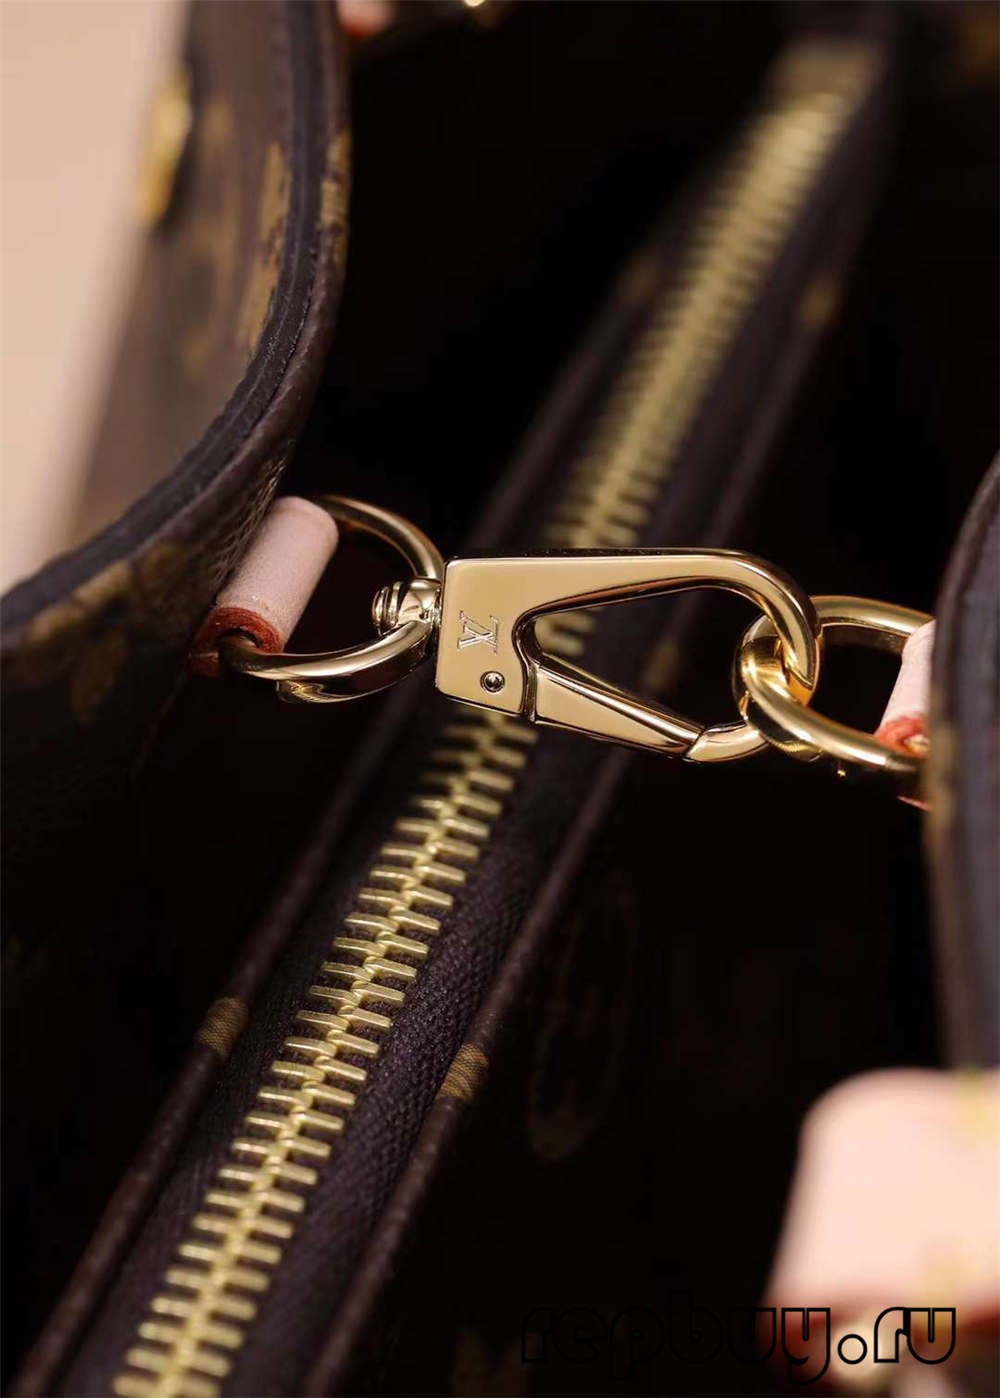 Louis Vuitton M41055 29cm Montaigne BB top replica bags Craftsmanship details (2022 Latest)-Best Quality Fake designer Bag Review, Replica designer bag ru